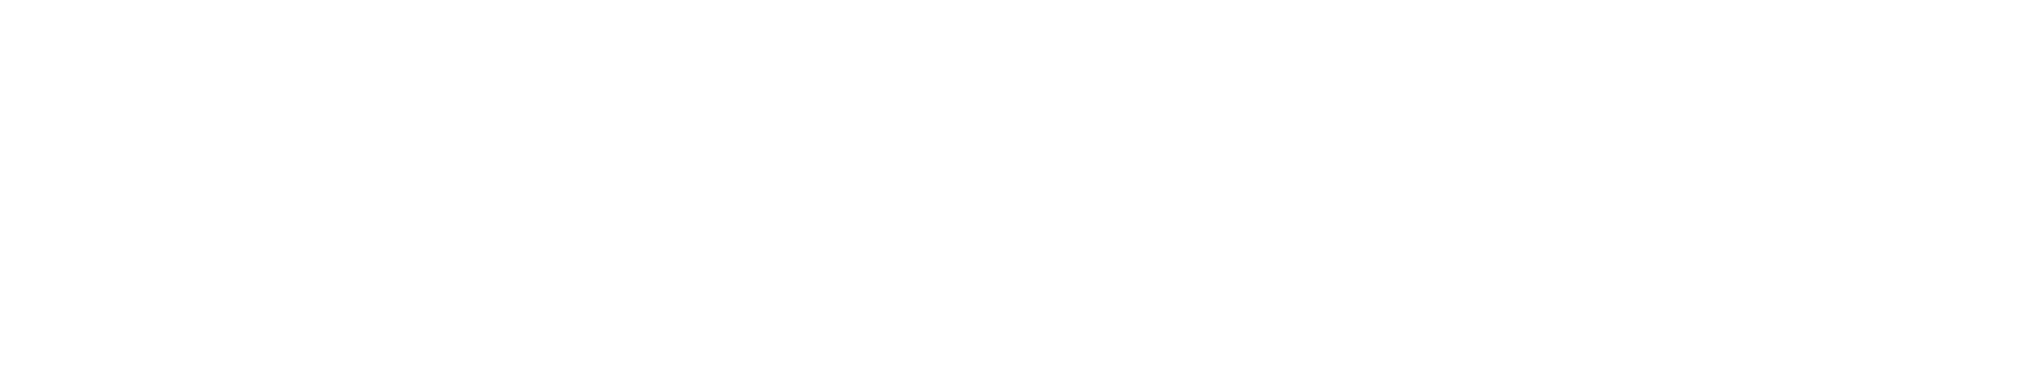 Logos Escuela UEMC Real Valladolid Blanco Web